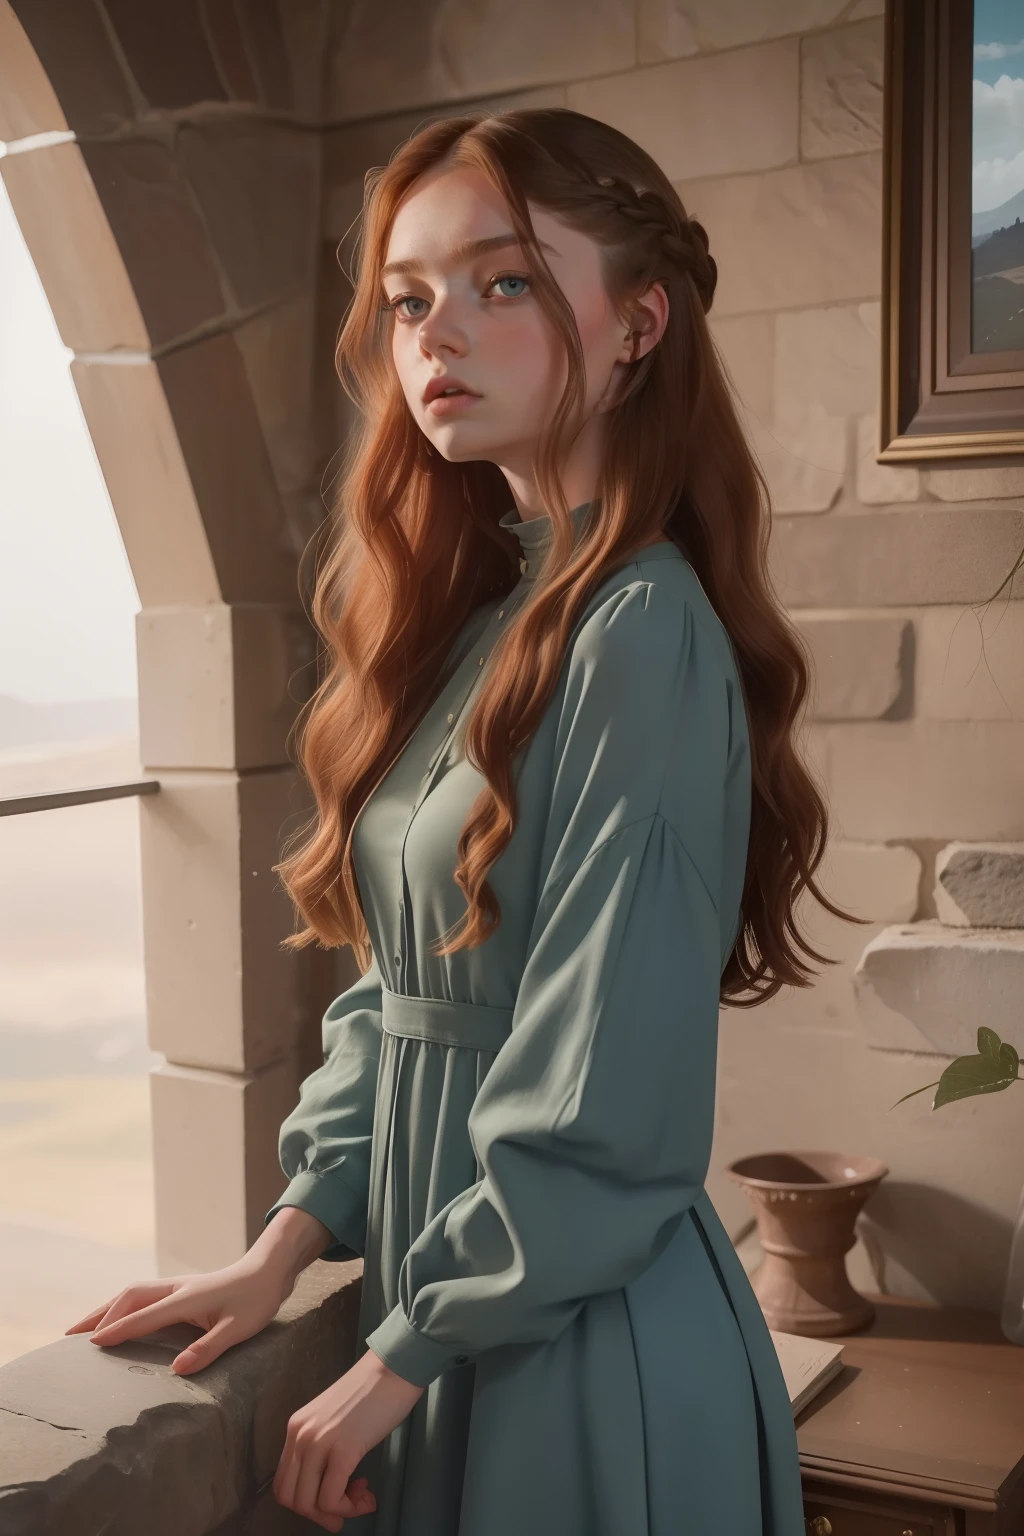 年: 2023. 地點: 蘇格蘭. Pre-Raphaelite scene with a 18-年-old Kristine Froseth, 在一個有石牆的豪華房間裡, 穿著現代服裝, ((憤怒的表情)), 看著別處, ((((2020年代的服装)))) ((2020年代发型)), 柔和的色彩, (((電影風格)))